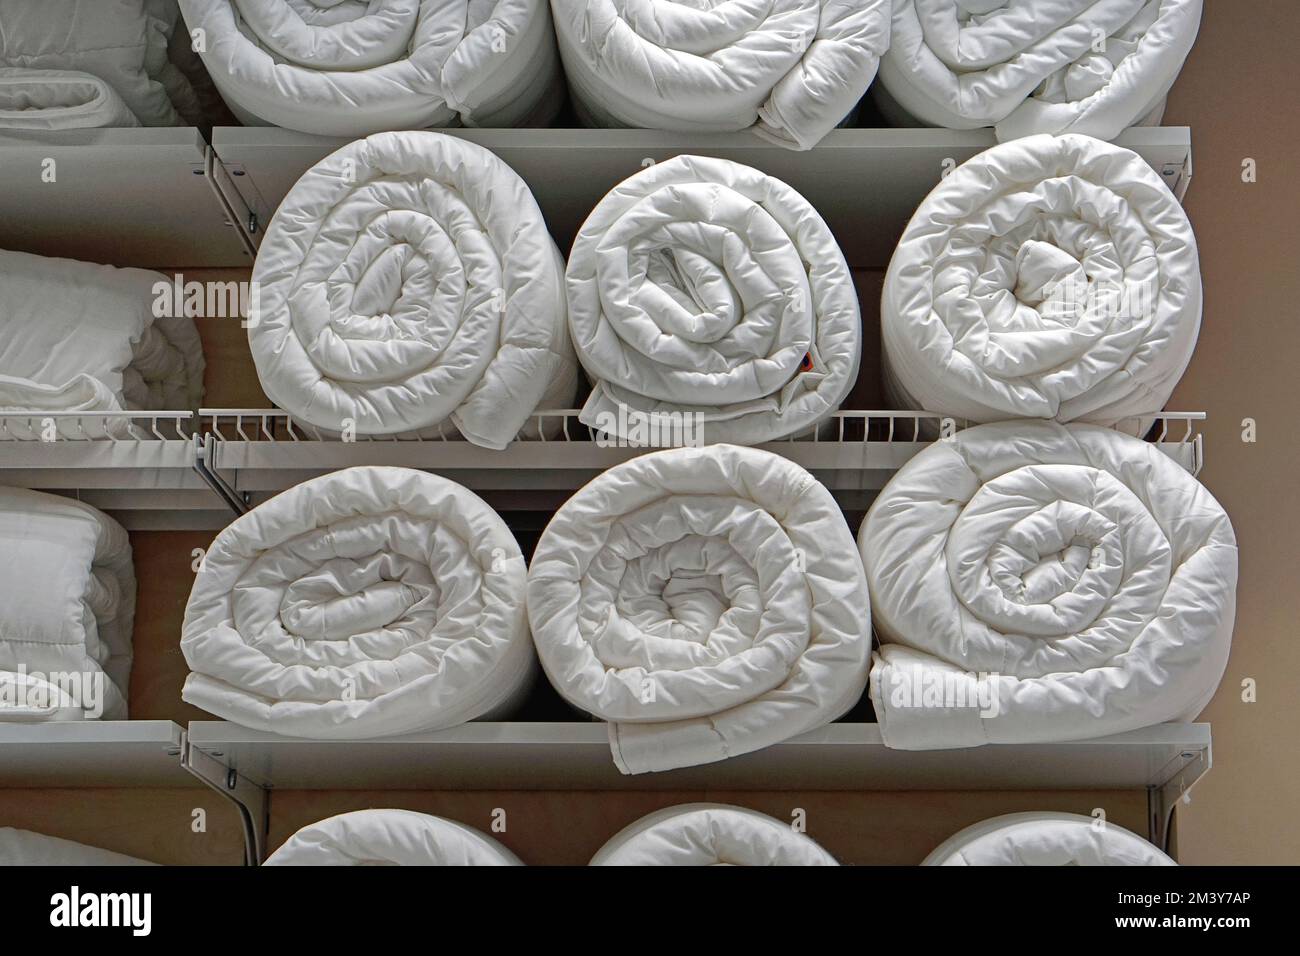 Viele saubere weiße Bettdecken, Bettdecken in Rollen im Regal Stockfoto